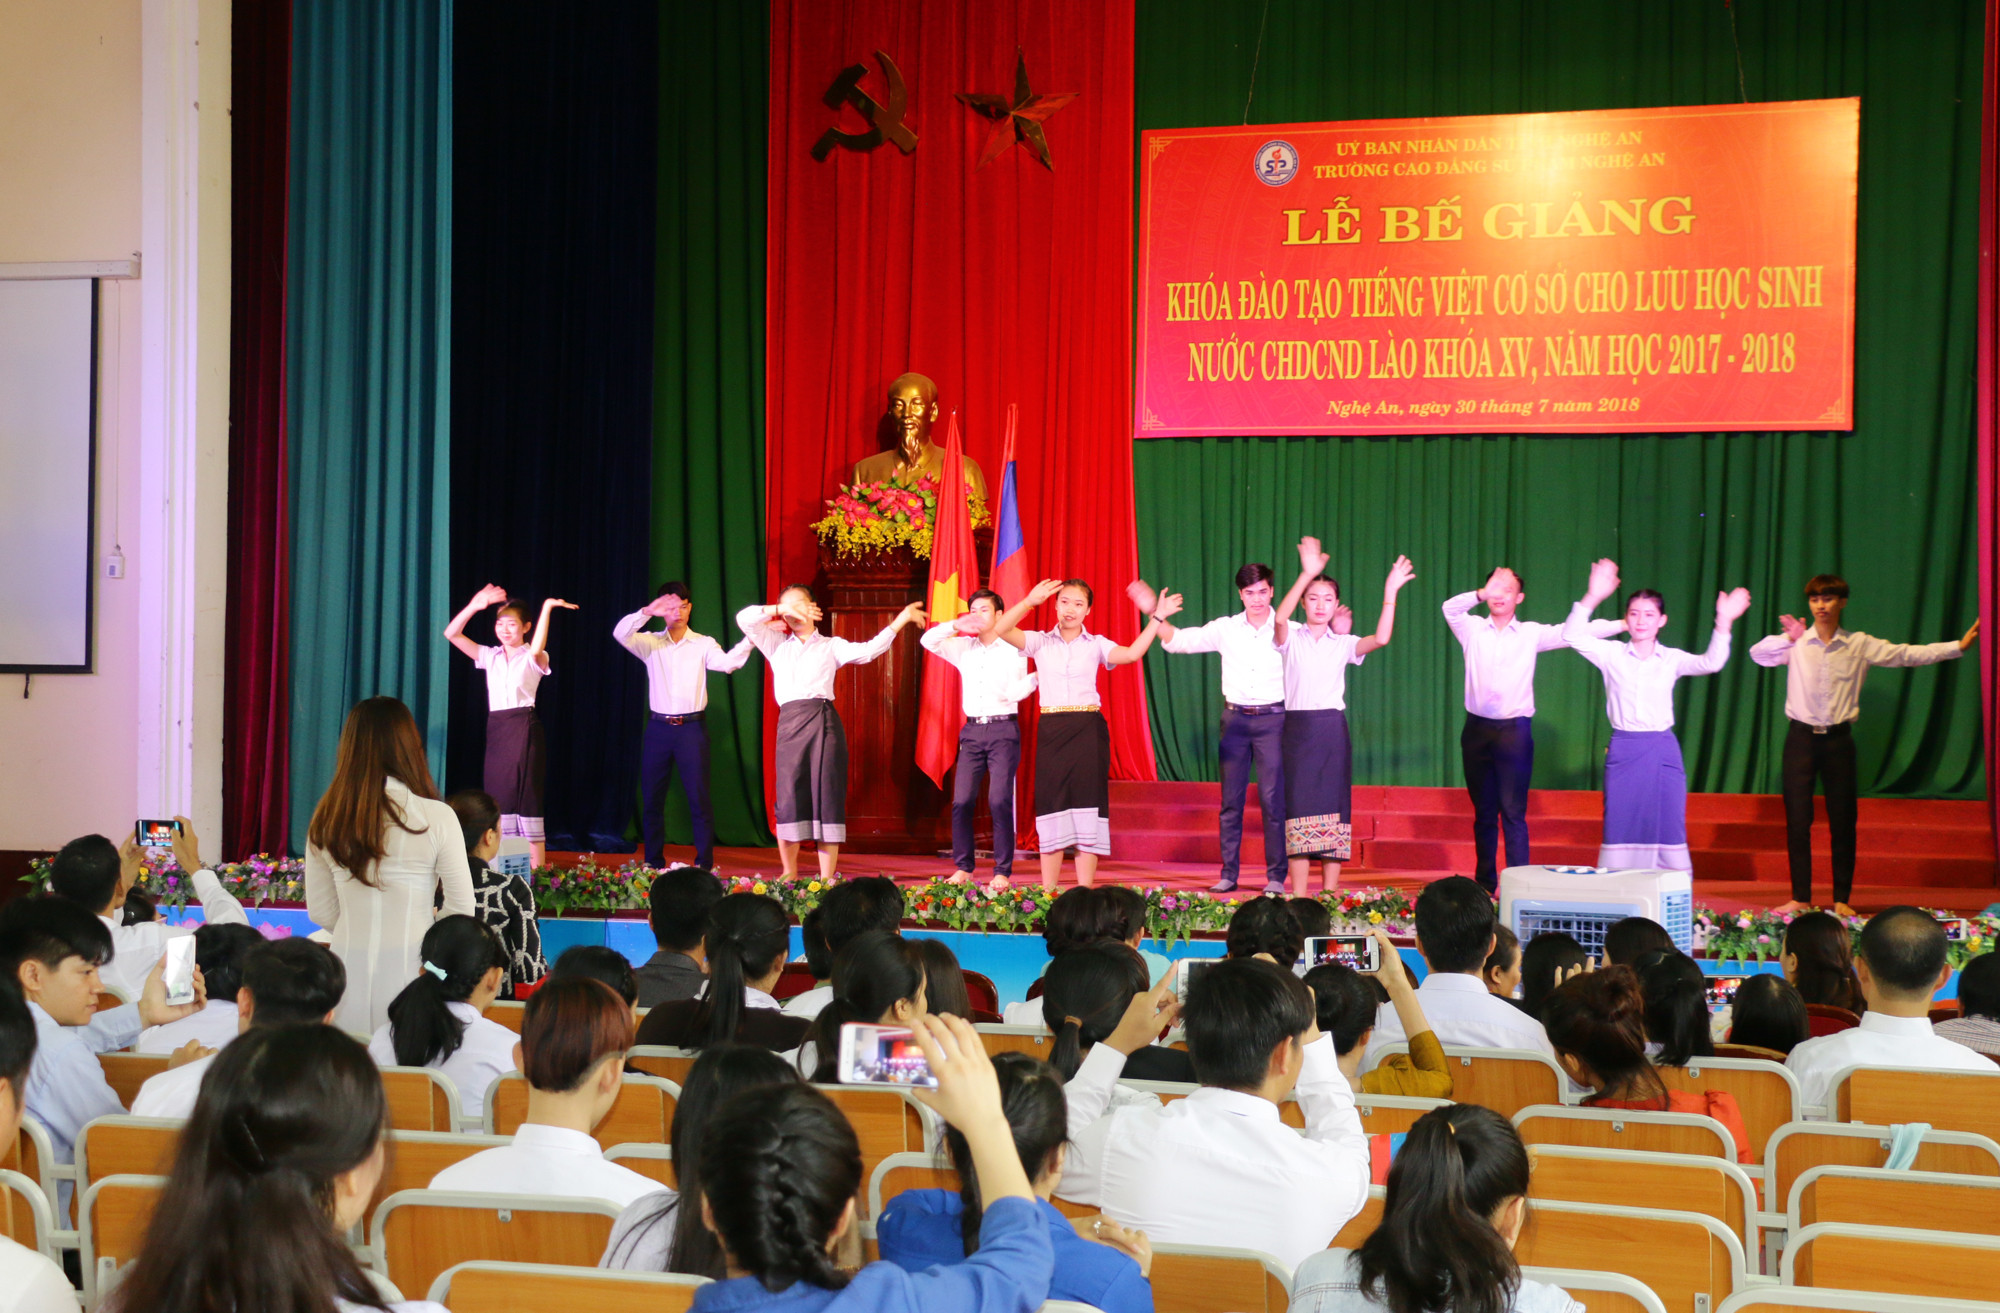 Chương trình văn nghệ của các lưu học sinh Lào tại buổi lễ bế giảng. Ảnh: Mỹ Hà